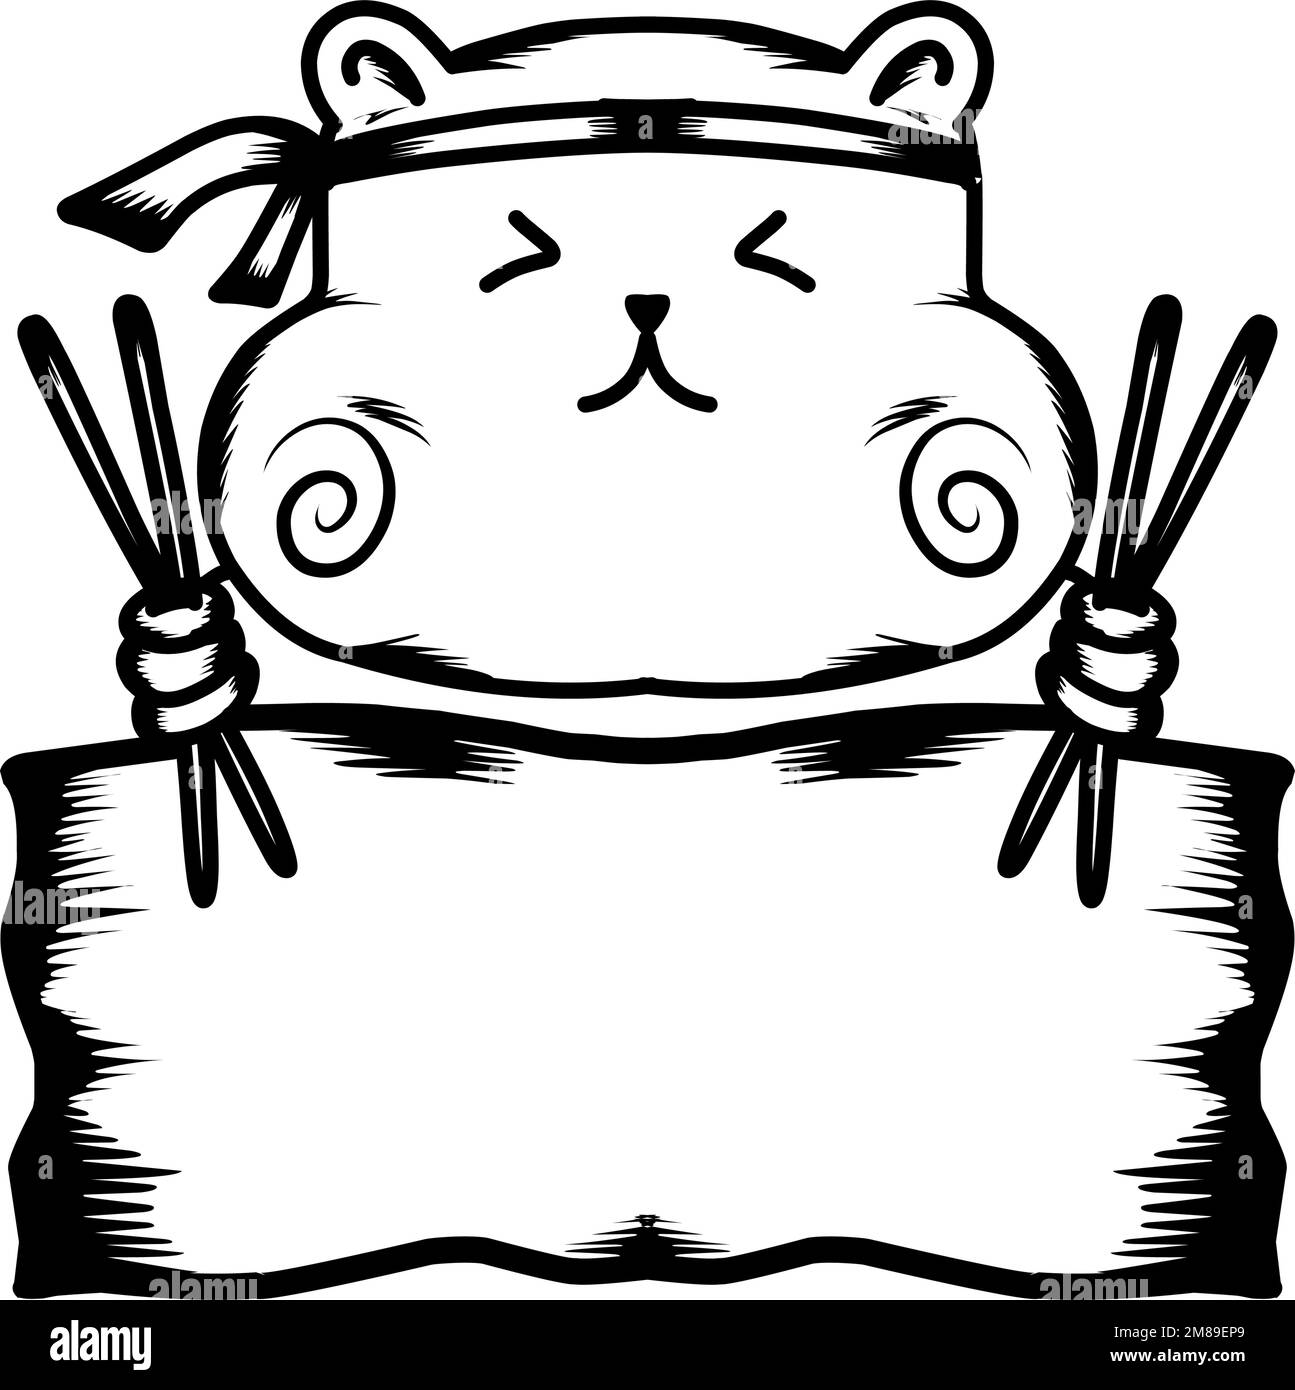 Dessin graphique du panda alimentaire de Chine et baguettes dans le dessin de modèle de logo de chapeau. Vecteur ligne moderne contour plat dessin animé caractère illustration ic Illustration de Vecteur